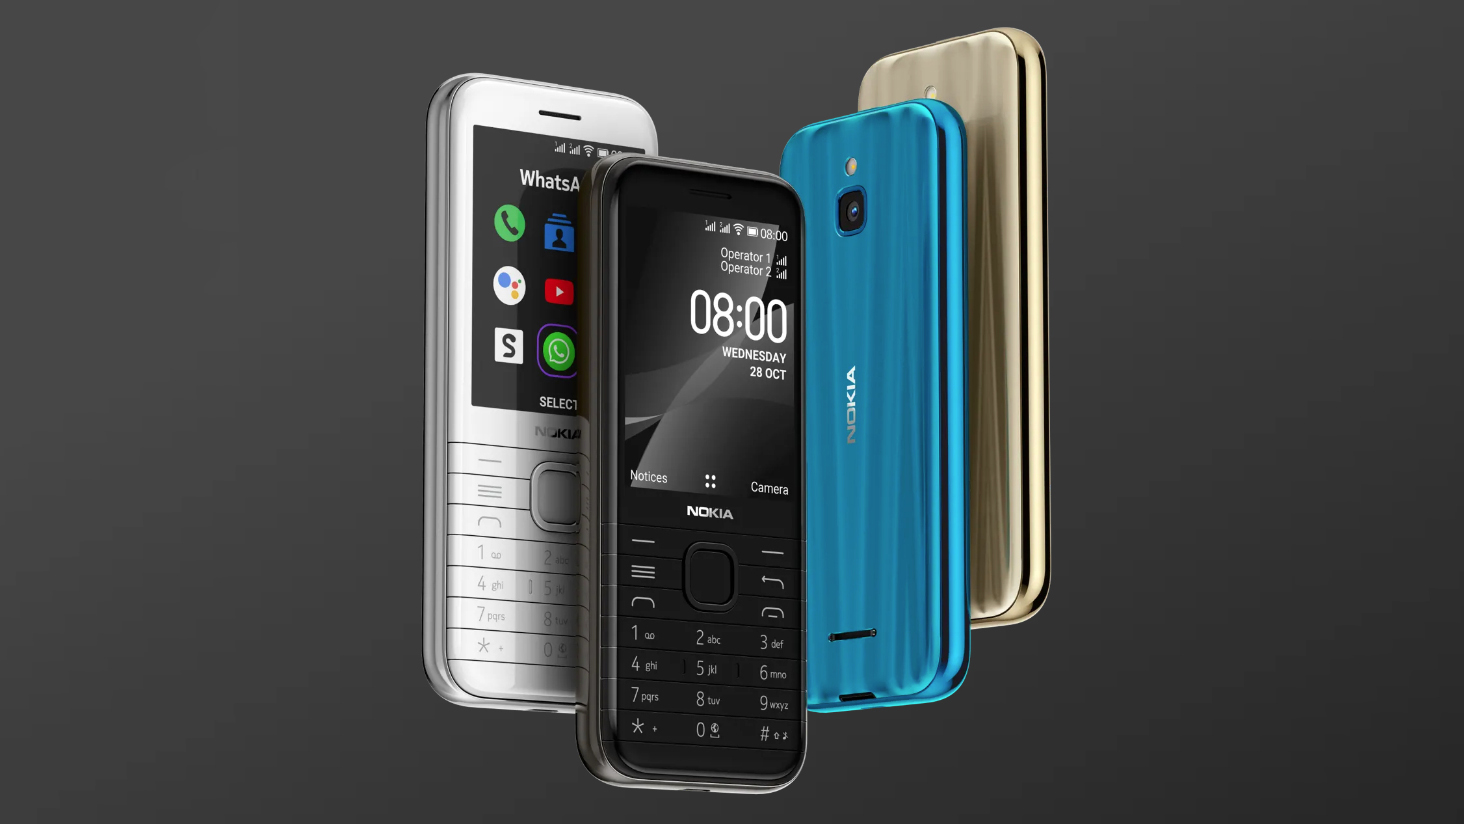 HMD Global hồi sinh
bộ đôi Nokia 6300 và Nokia 8000 với thiết kế mới, hỗ trợ 4G,
giá lên tới 2.2 triệu đồng